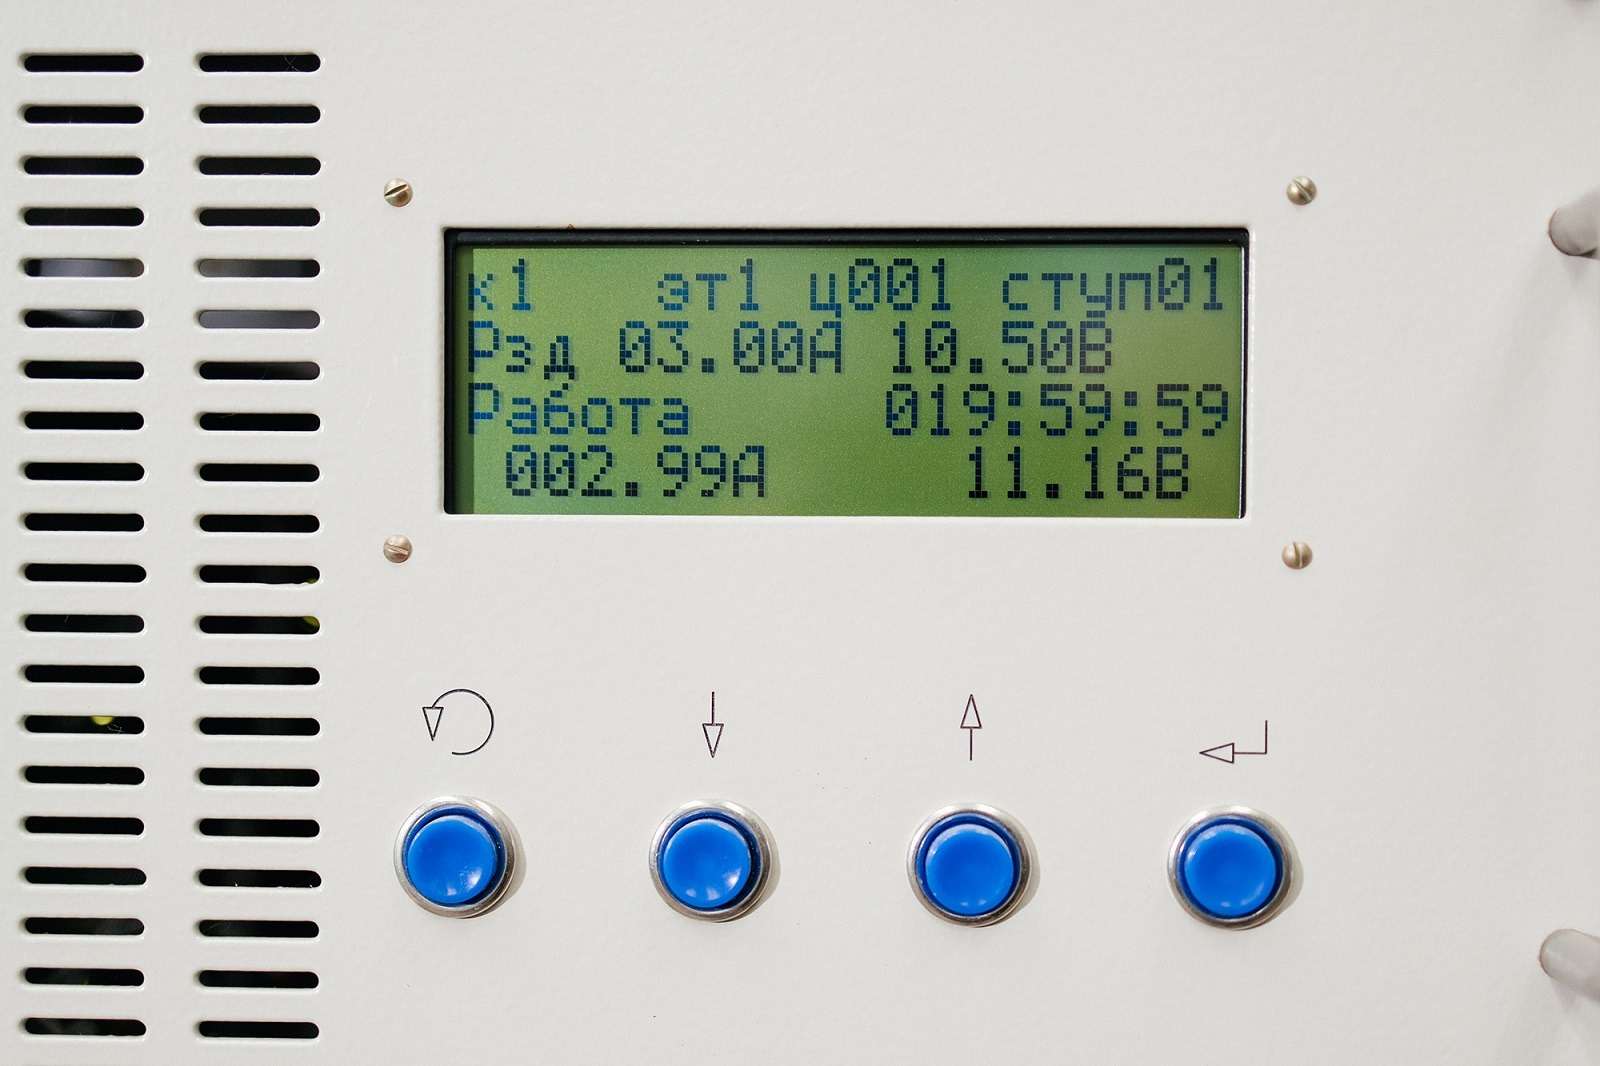 Зарядно-разрядный стенд для электрических испытаний батарей. На дисплее прибора отражены: заданный и фактический ток разряда 3,00  (2,99) А, продолжительность разряда 019:59:59, напряжение при данной продолжительности разряда 11,16 В и напряжение окончания испытания -10,50 В.